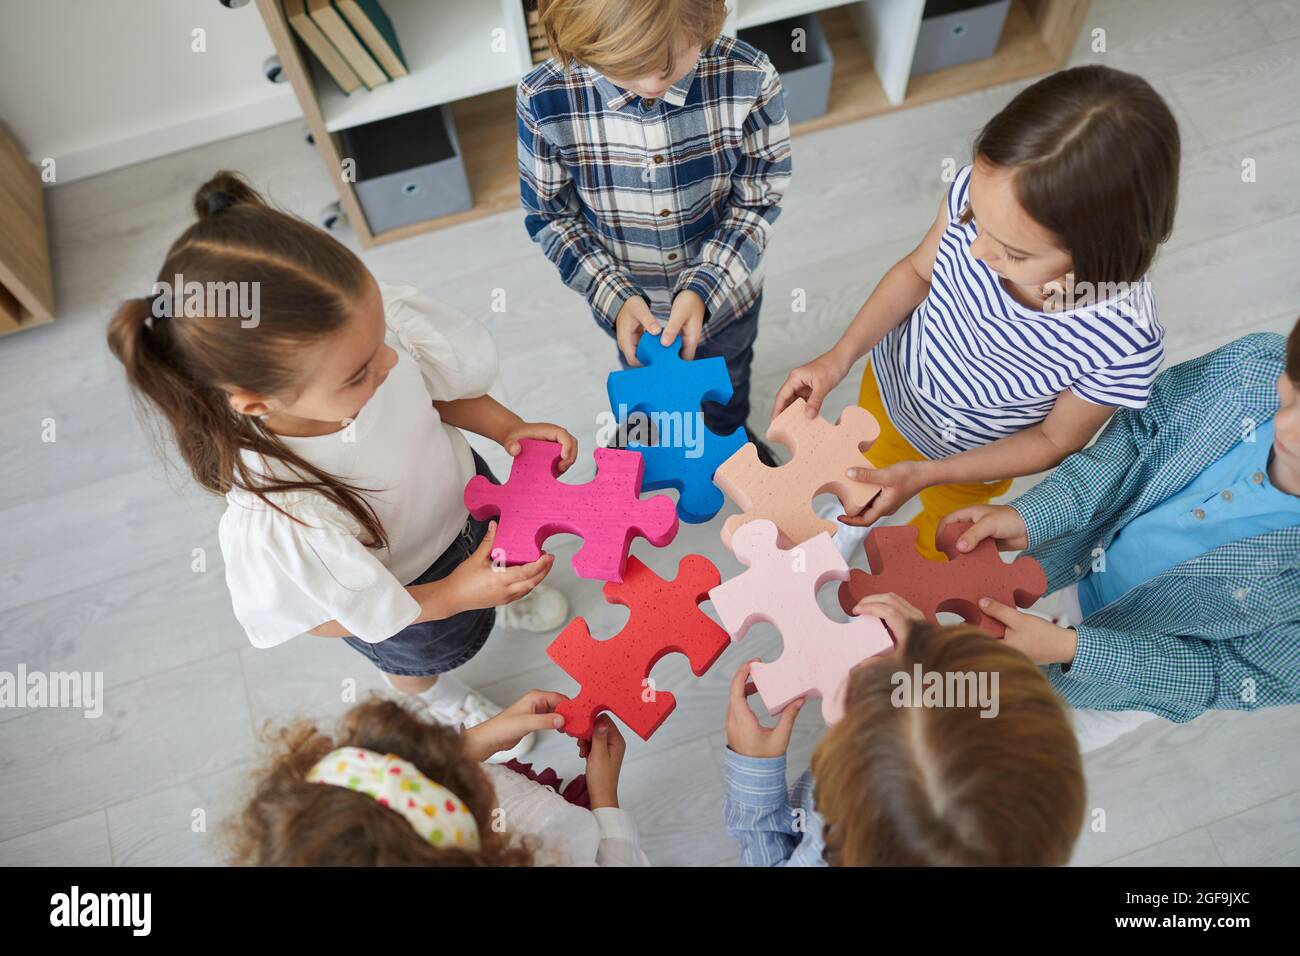 Une équipe de petits enfants se tenant en cercle et essayant de joindre des pièces de puzzle Banque D'Images